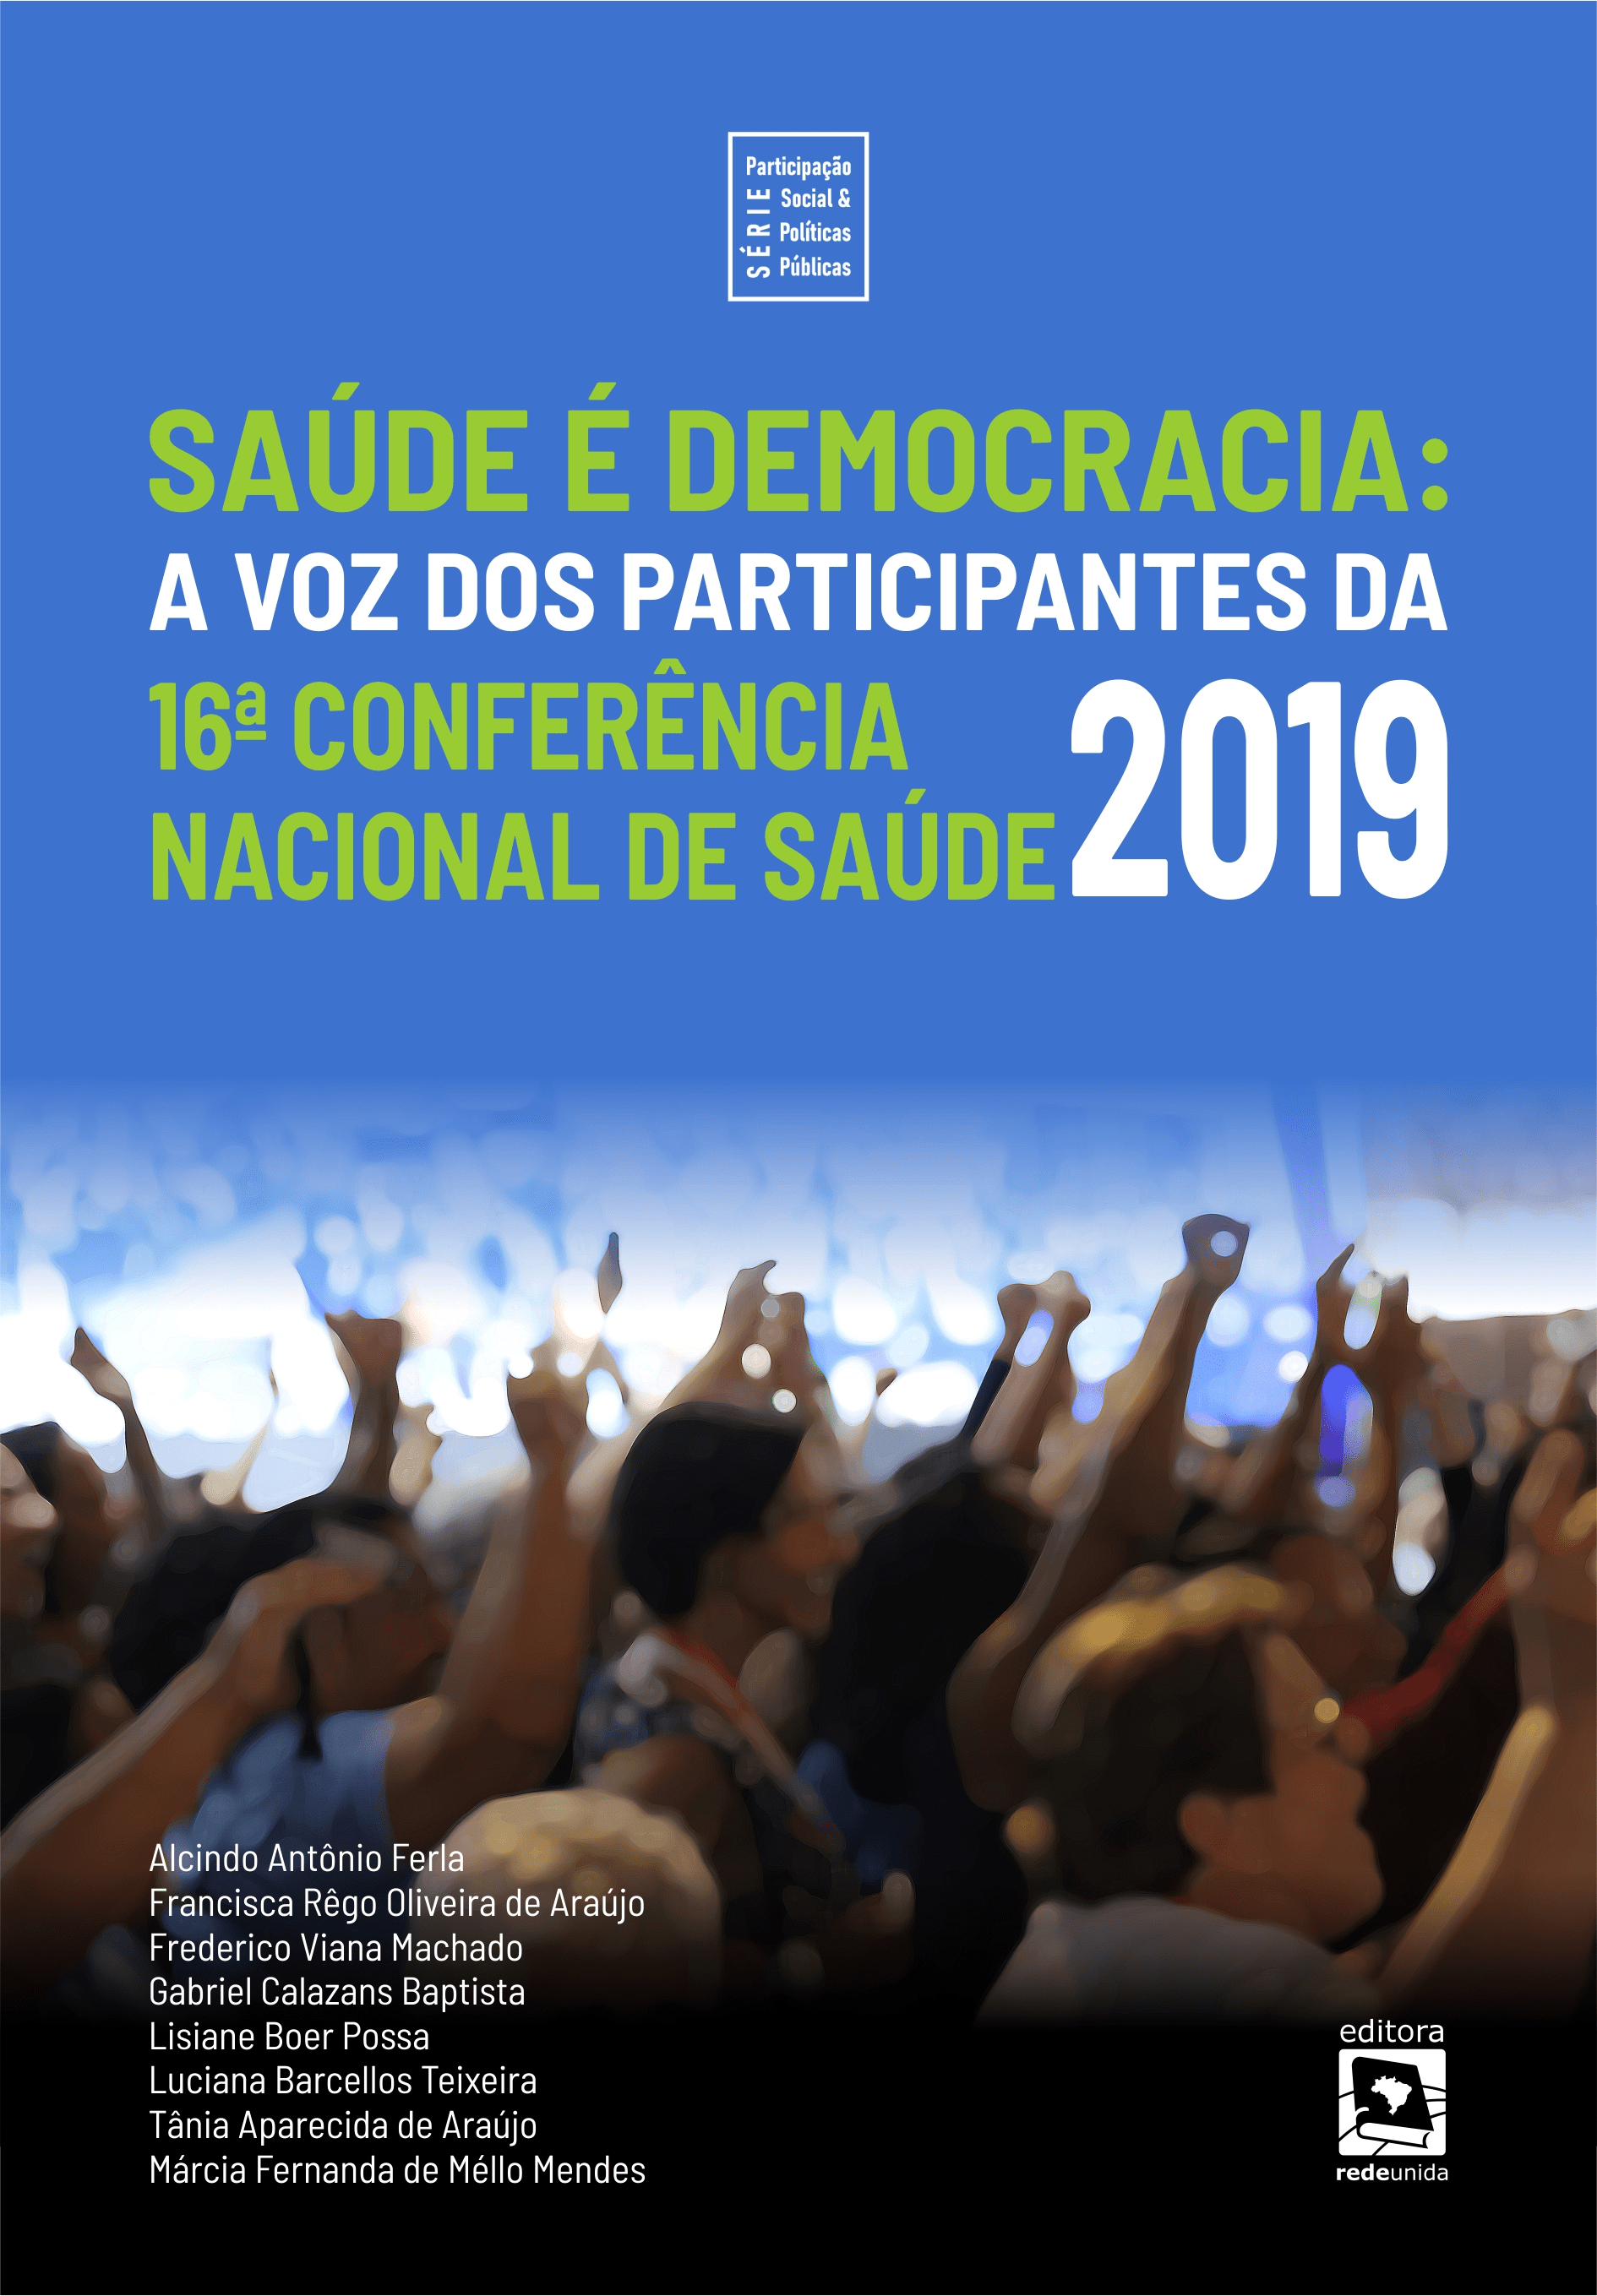 Saúde é democracia: a voz dos participantes da 16ª Conferência Nacional de Saúde de 2019